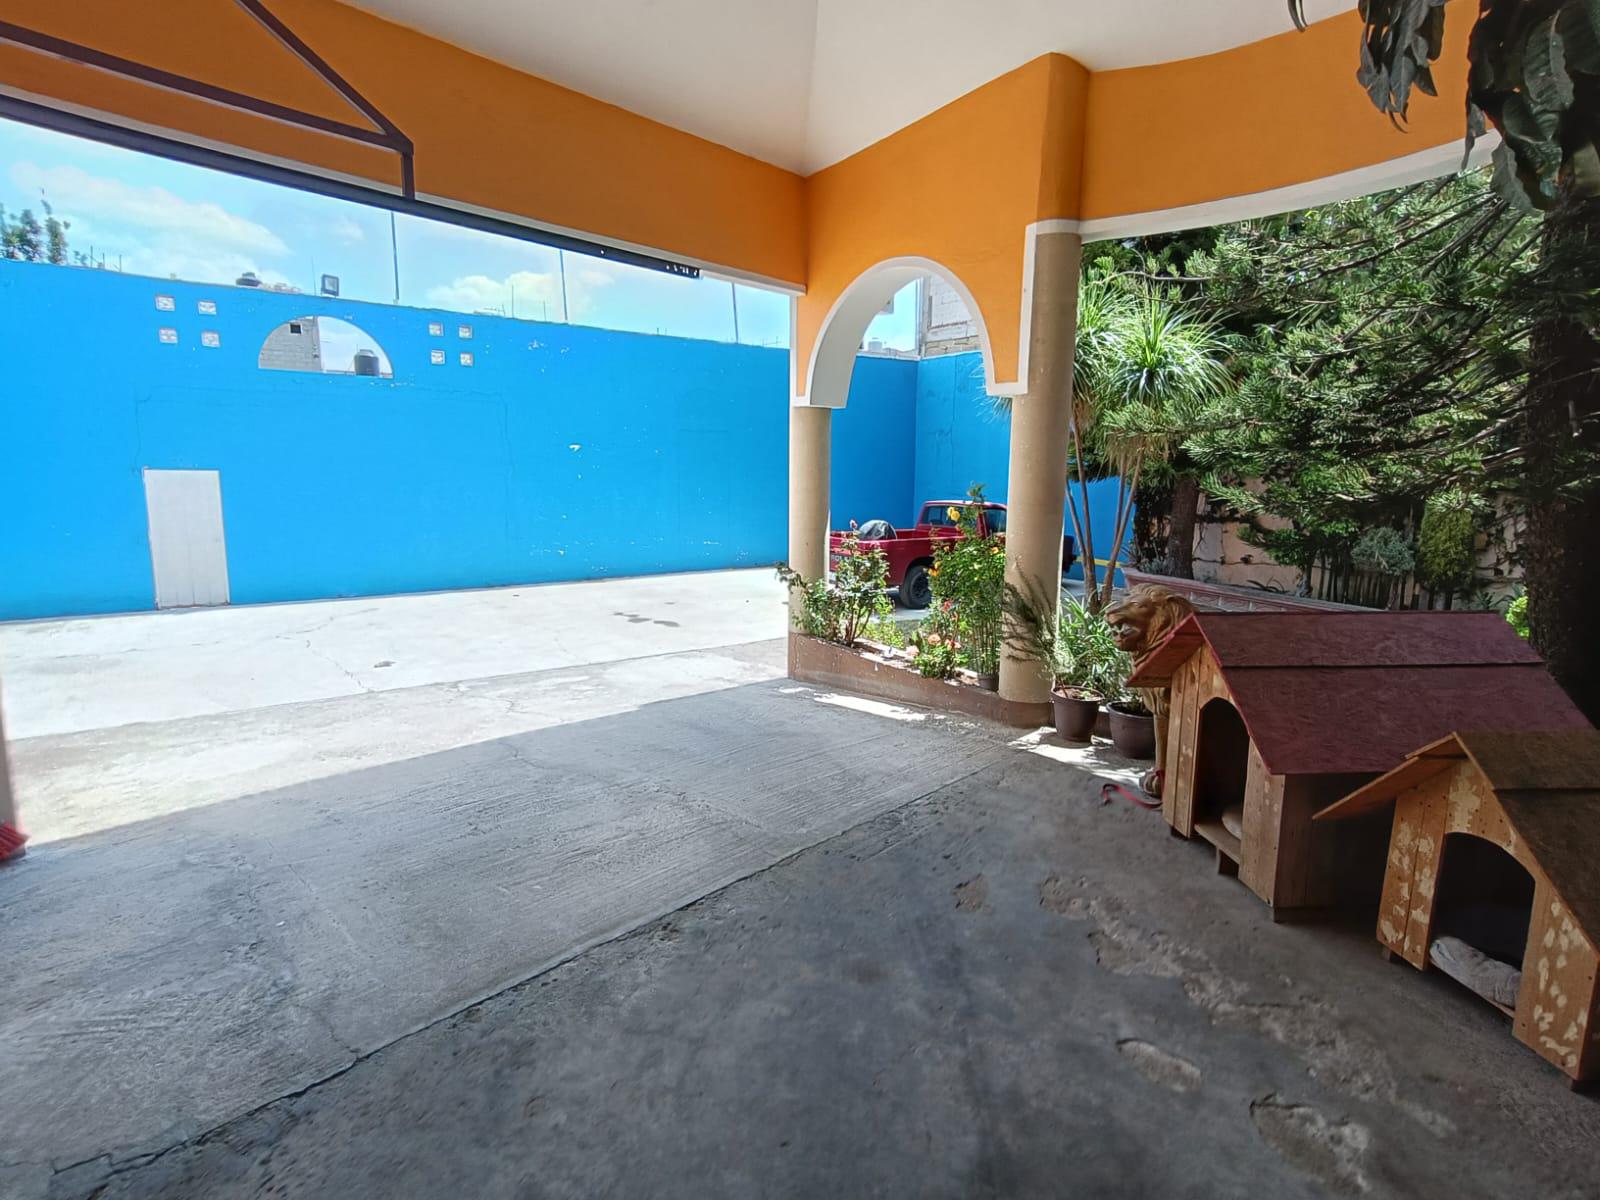 Residencia en venta en Santa Ana Chiautempan, Tlaxcala.